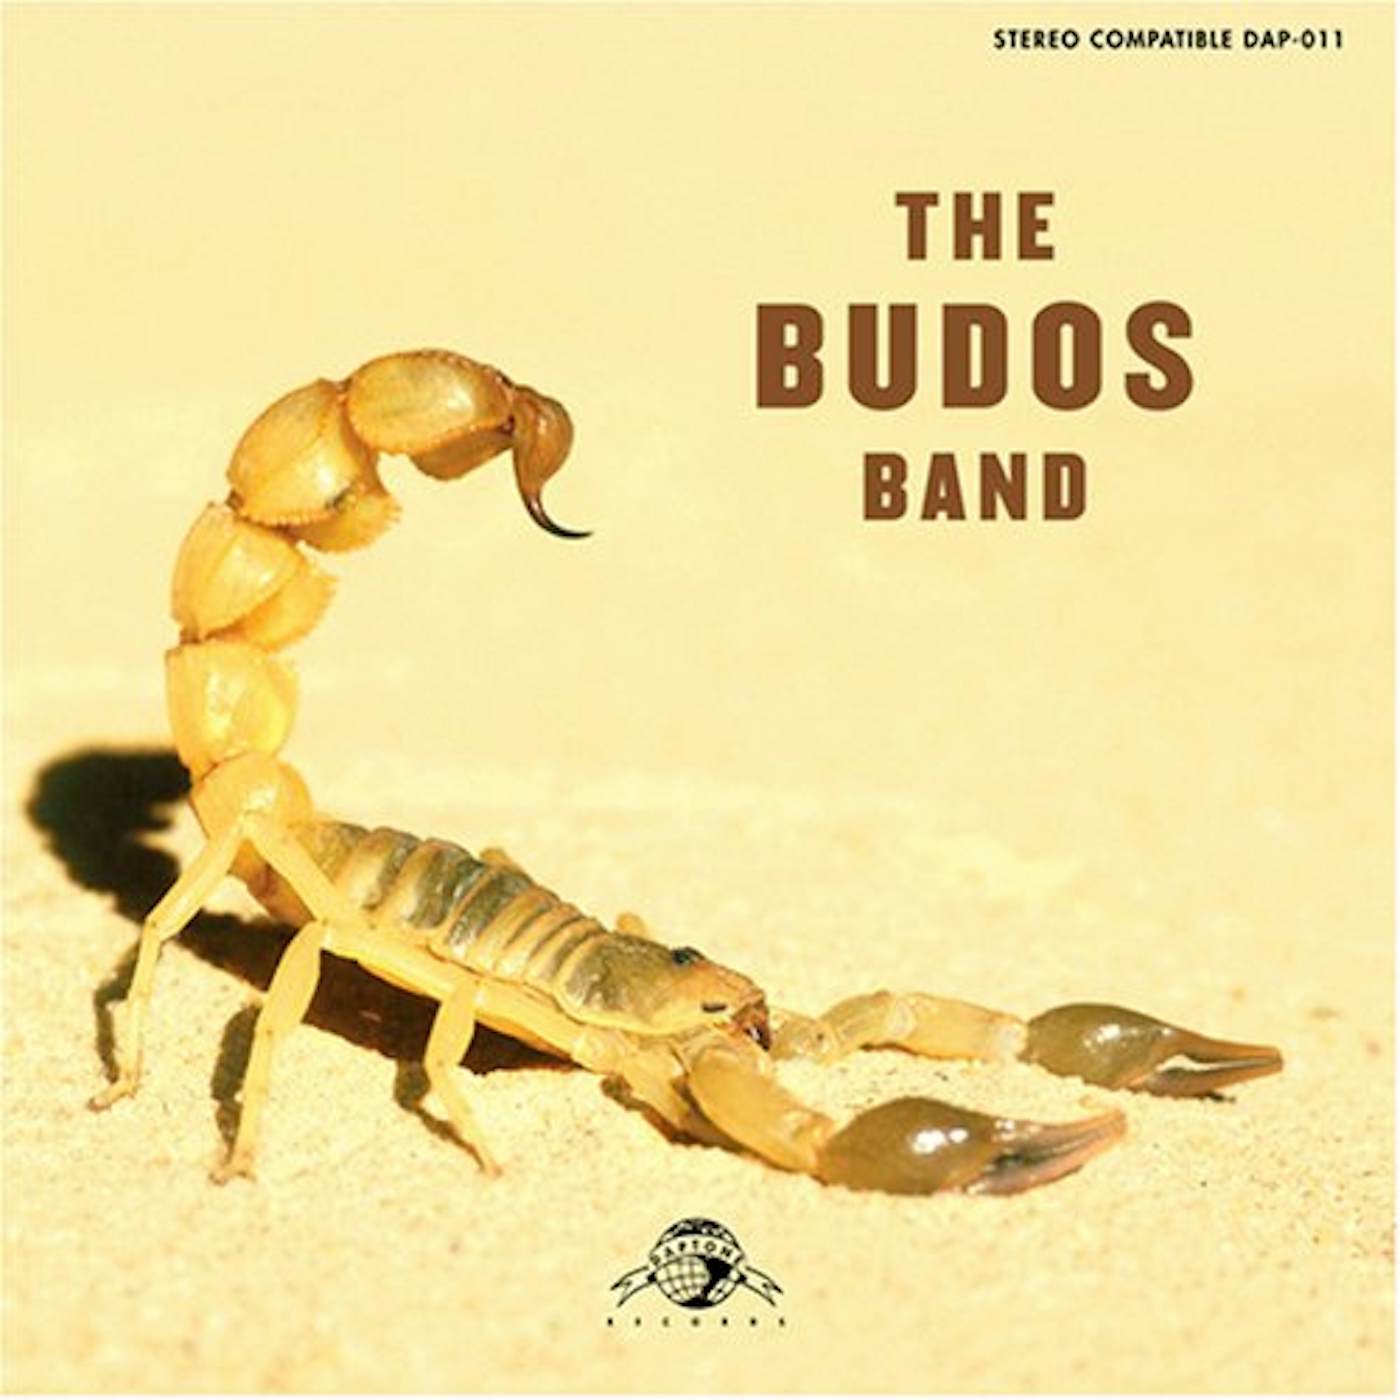 The Budos Band II CD